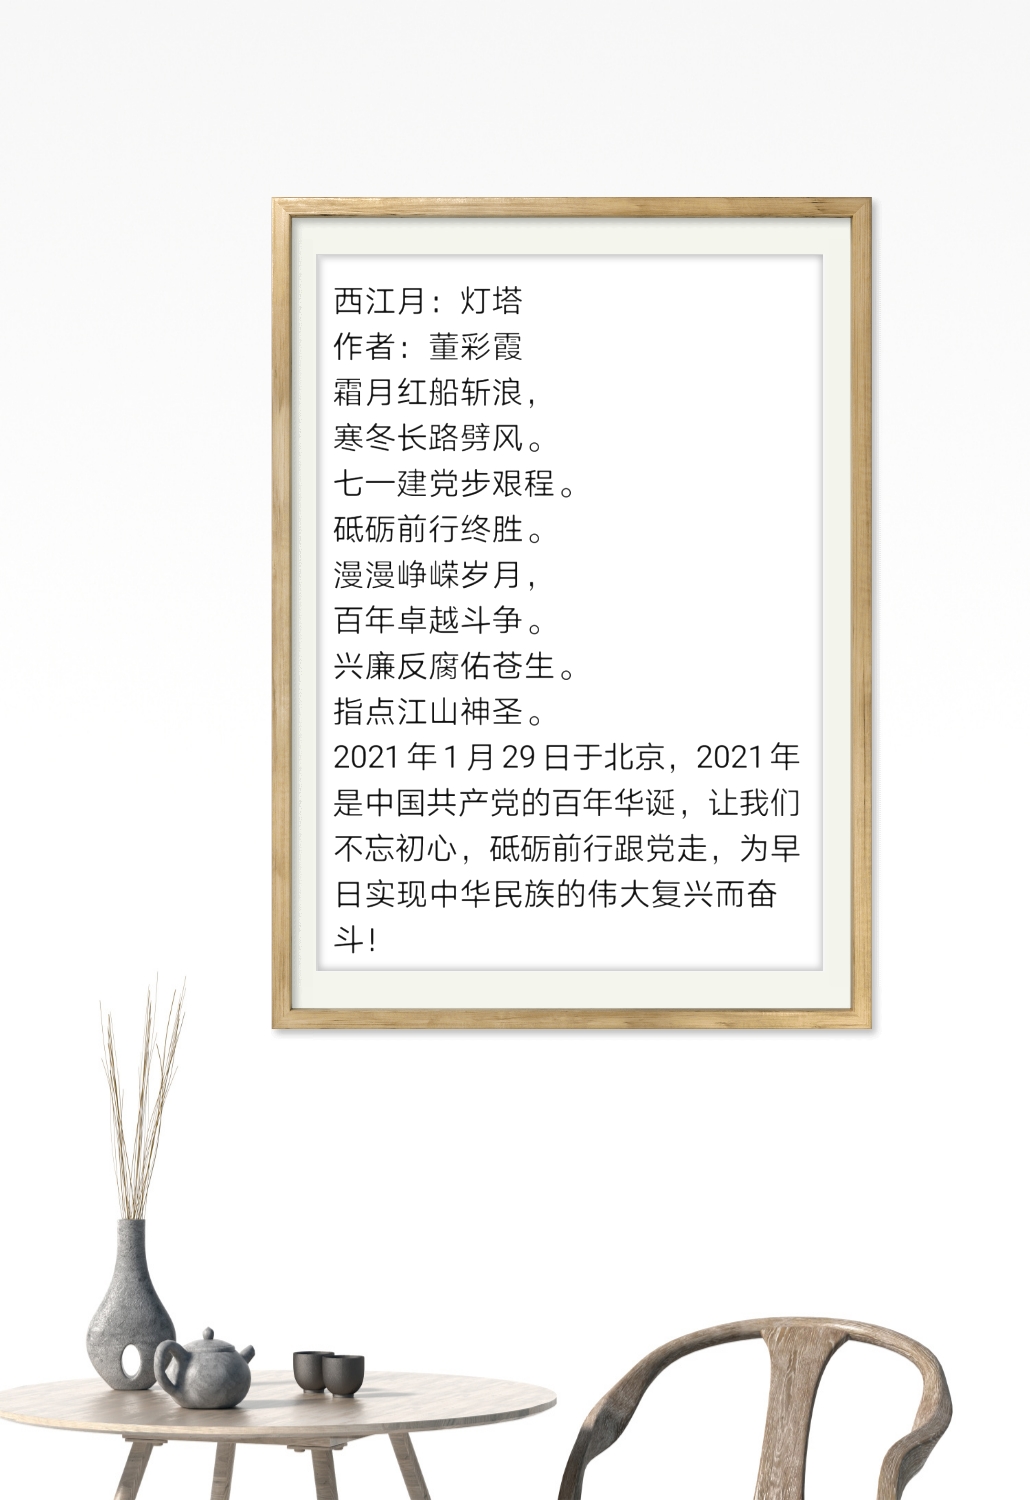 中国大众文化学会名人书画艺术发展委员会——董彩霞